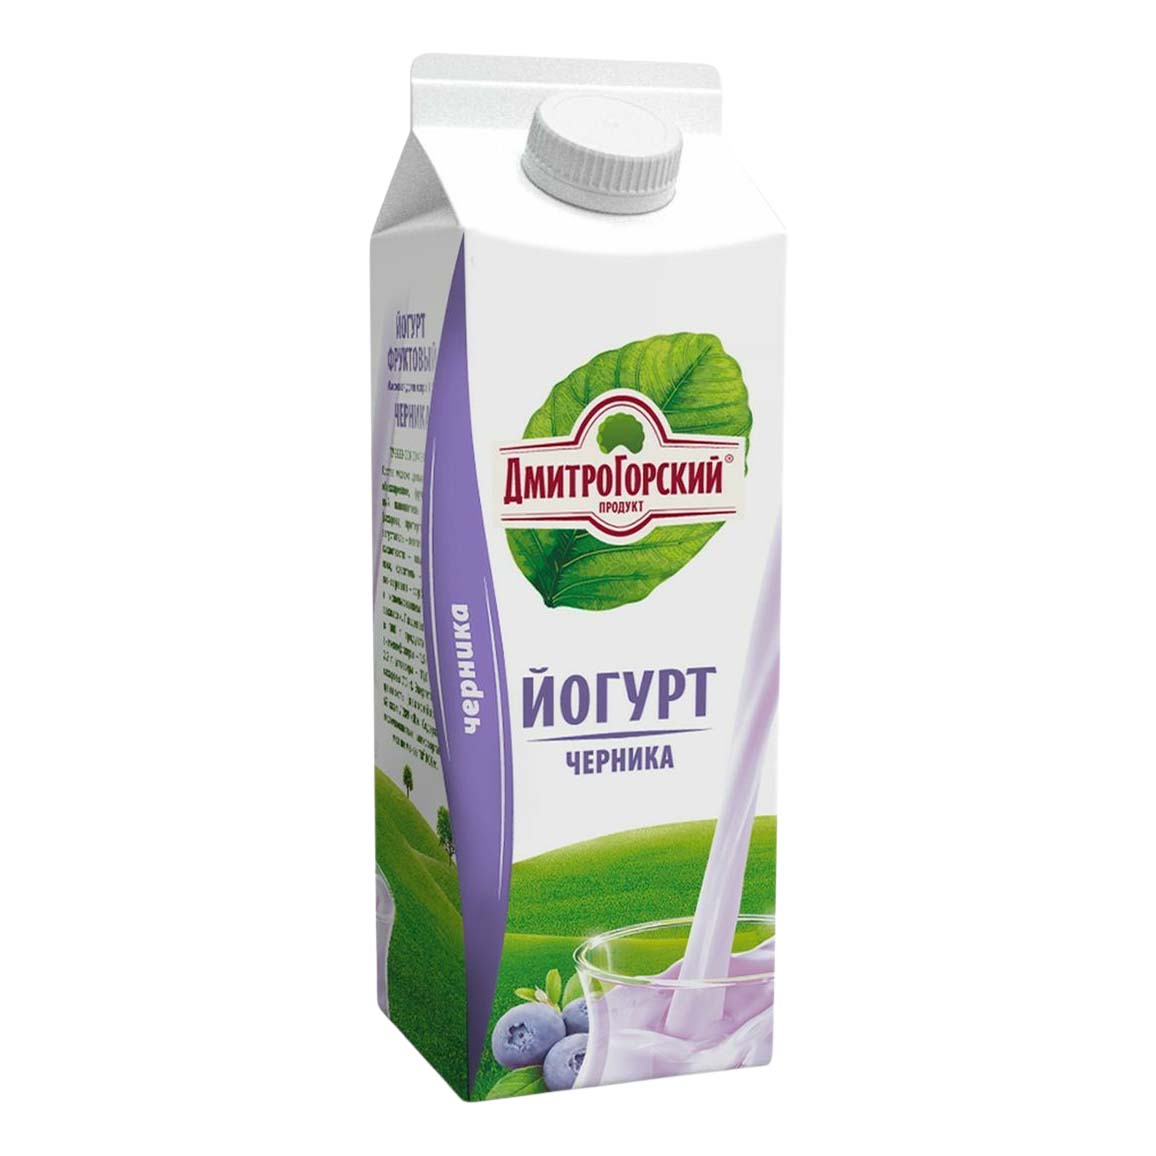 фото Питьевой йогурт дмитрогорский продукт черника 1,5% 450 мл